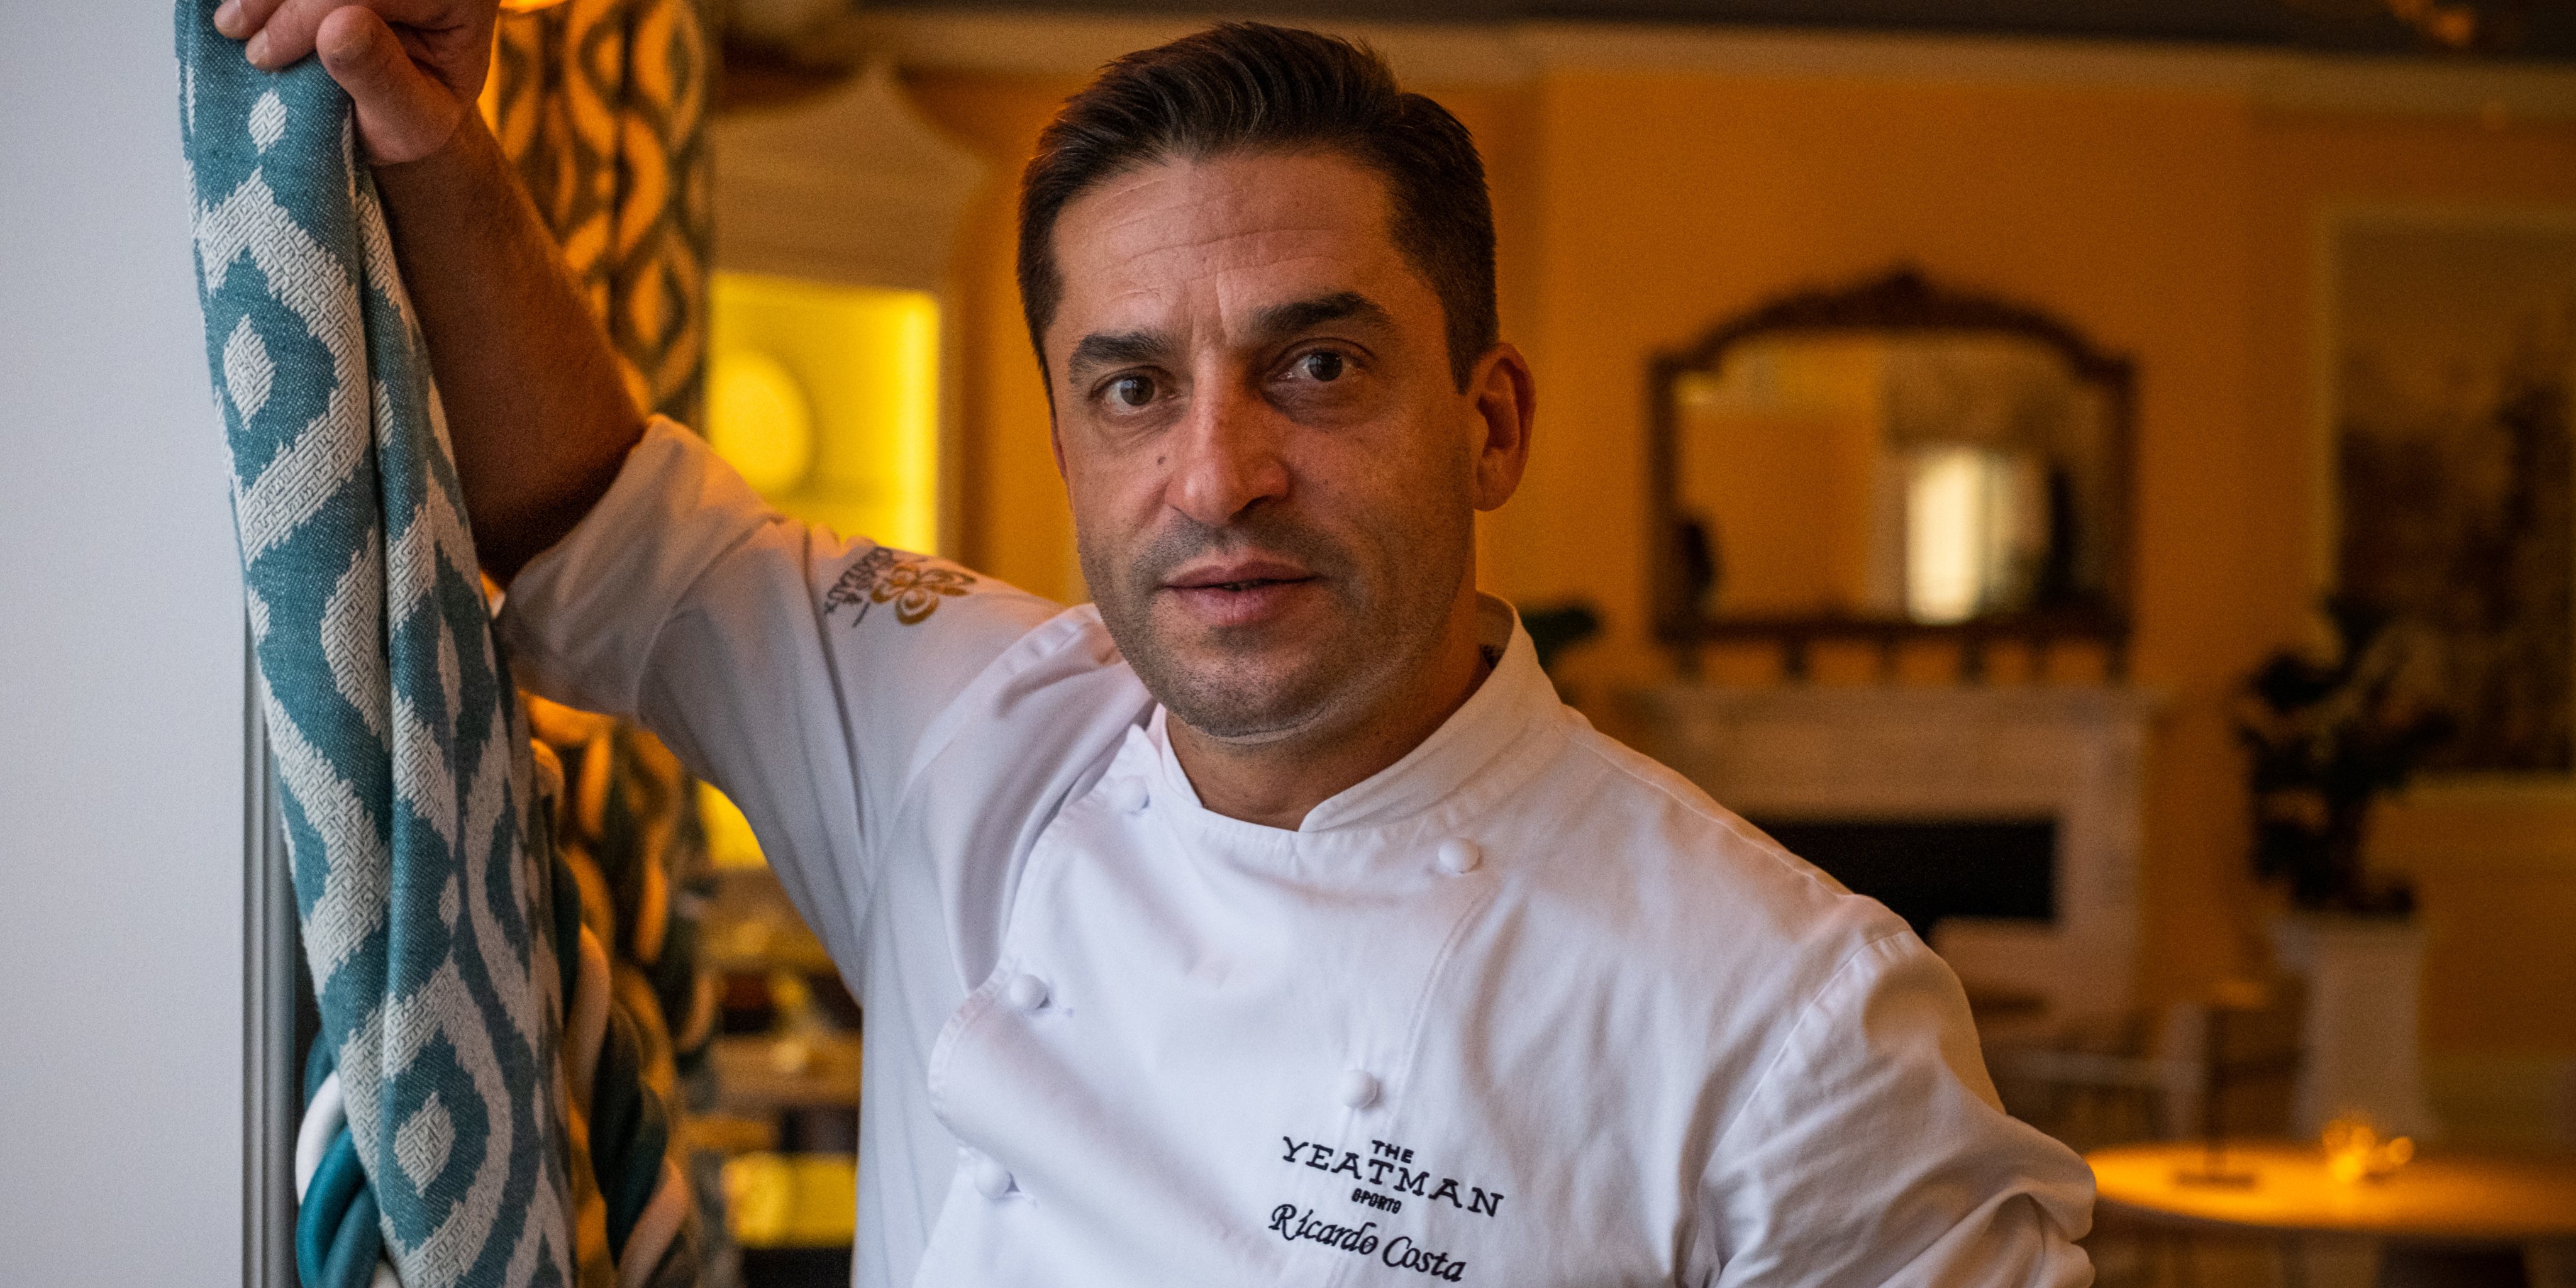 Aos 43 anos, o chef Ricardo Costa é um dos nomes maiores do panorama gastronómico nacional.